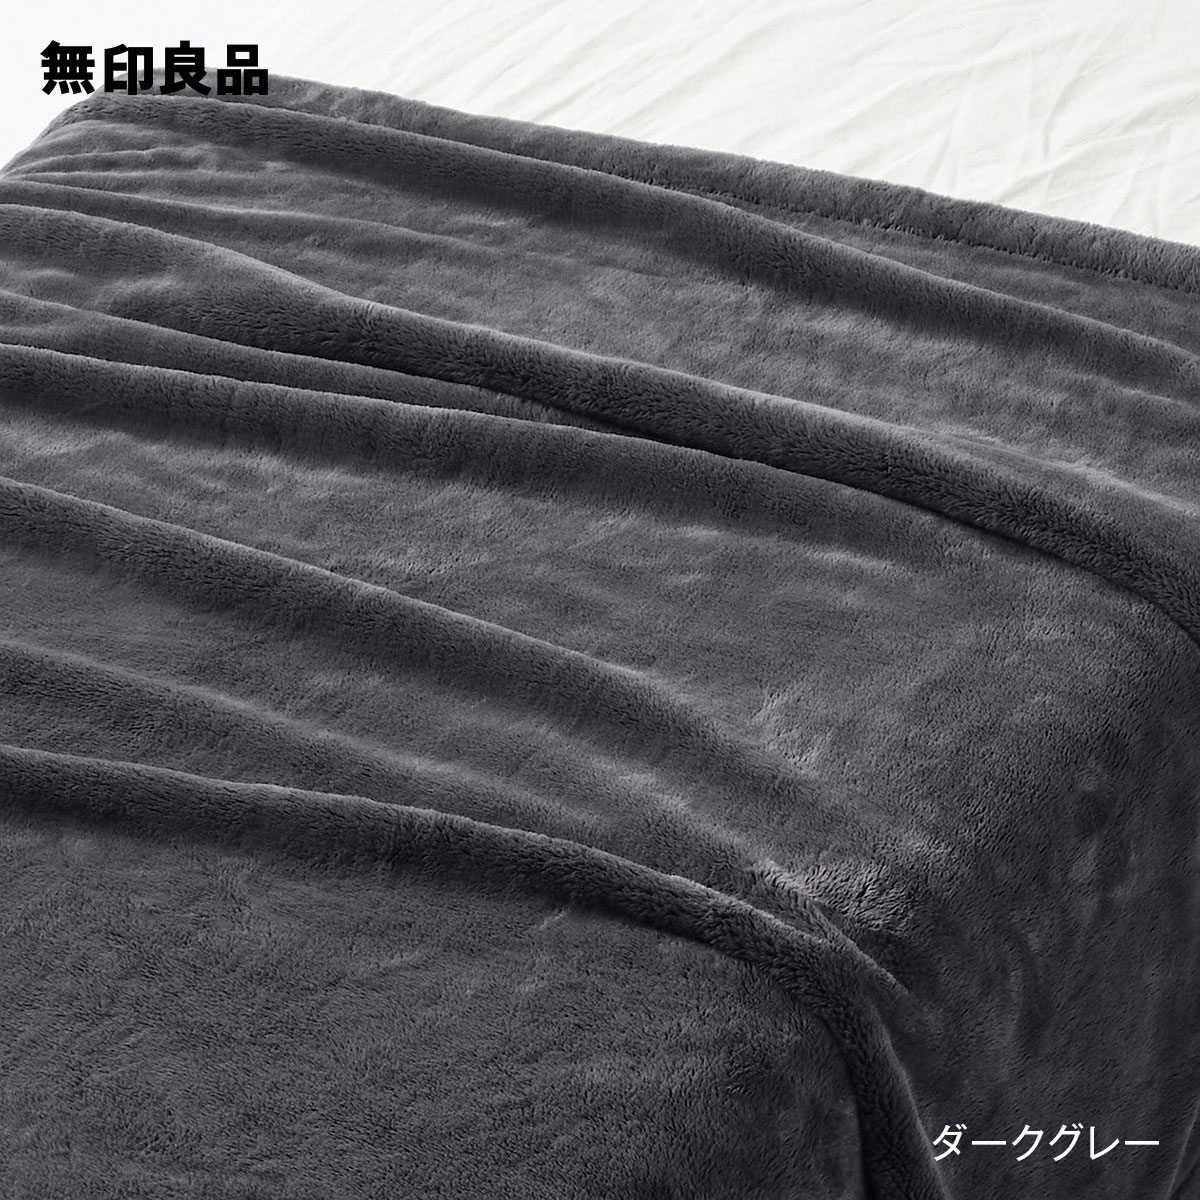 【無印良品 公式】ムレにくいあたたかファイバー厚手毛布・ダブル・180×200cm